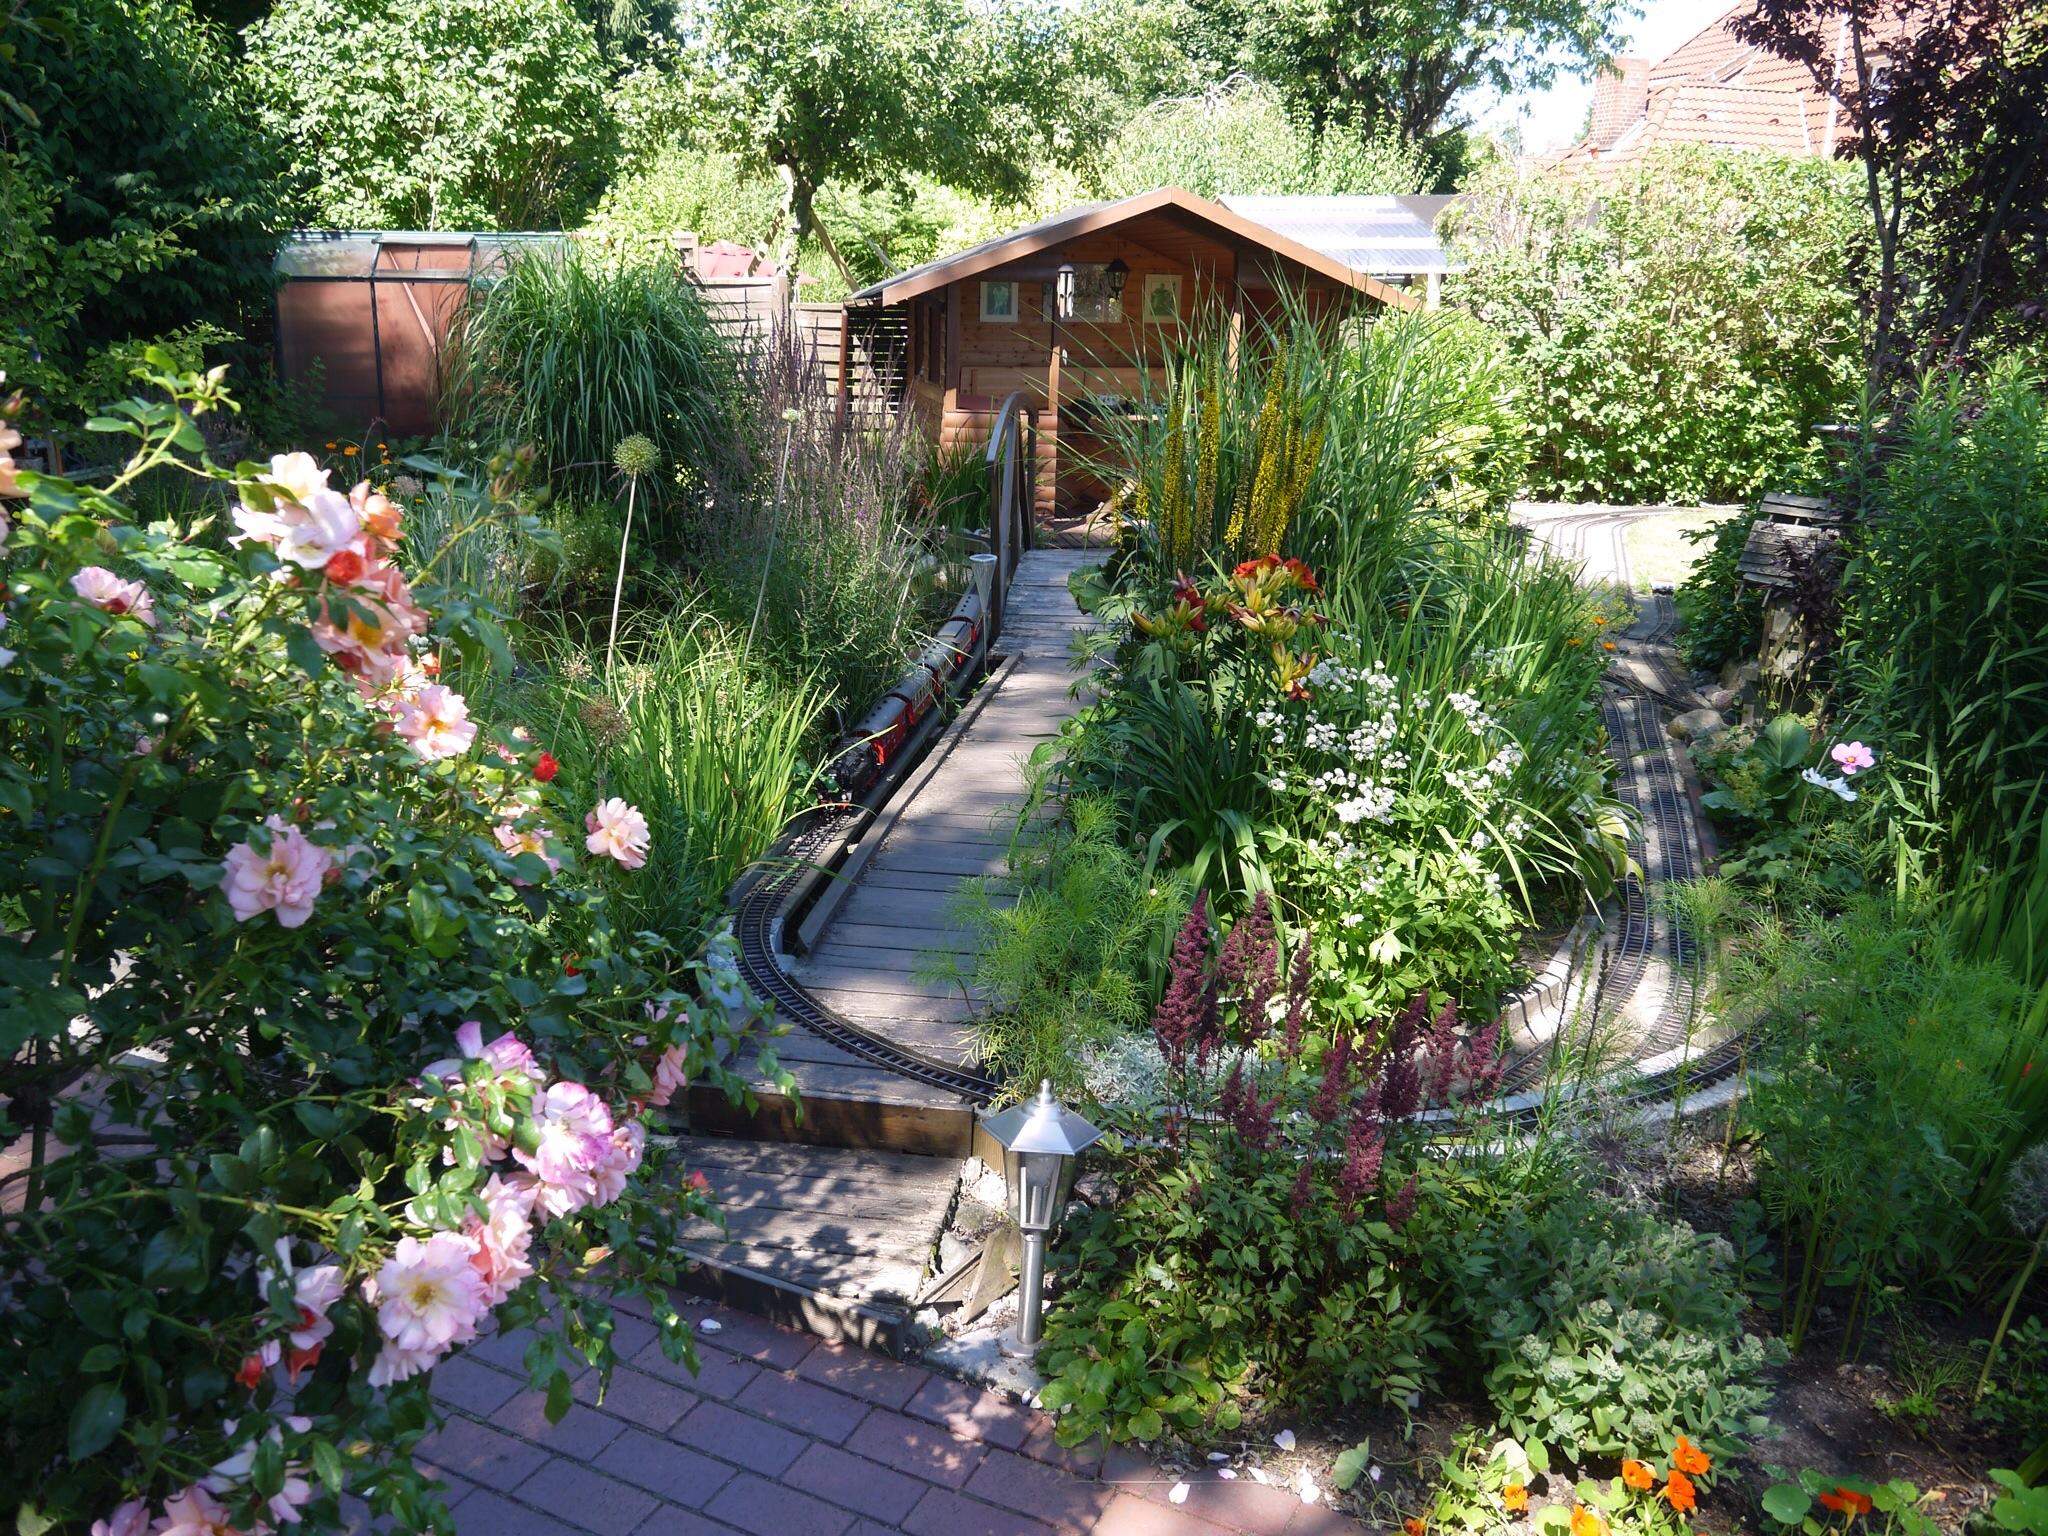 Schöner Wohnen Garten Reizend Gartengestaltung Bilder Sitzecke | Garten